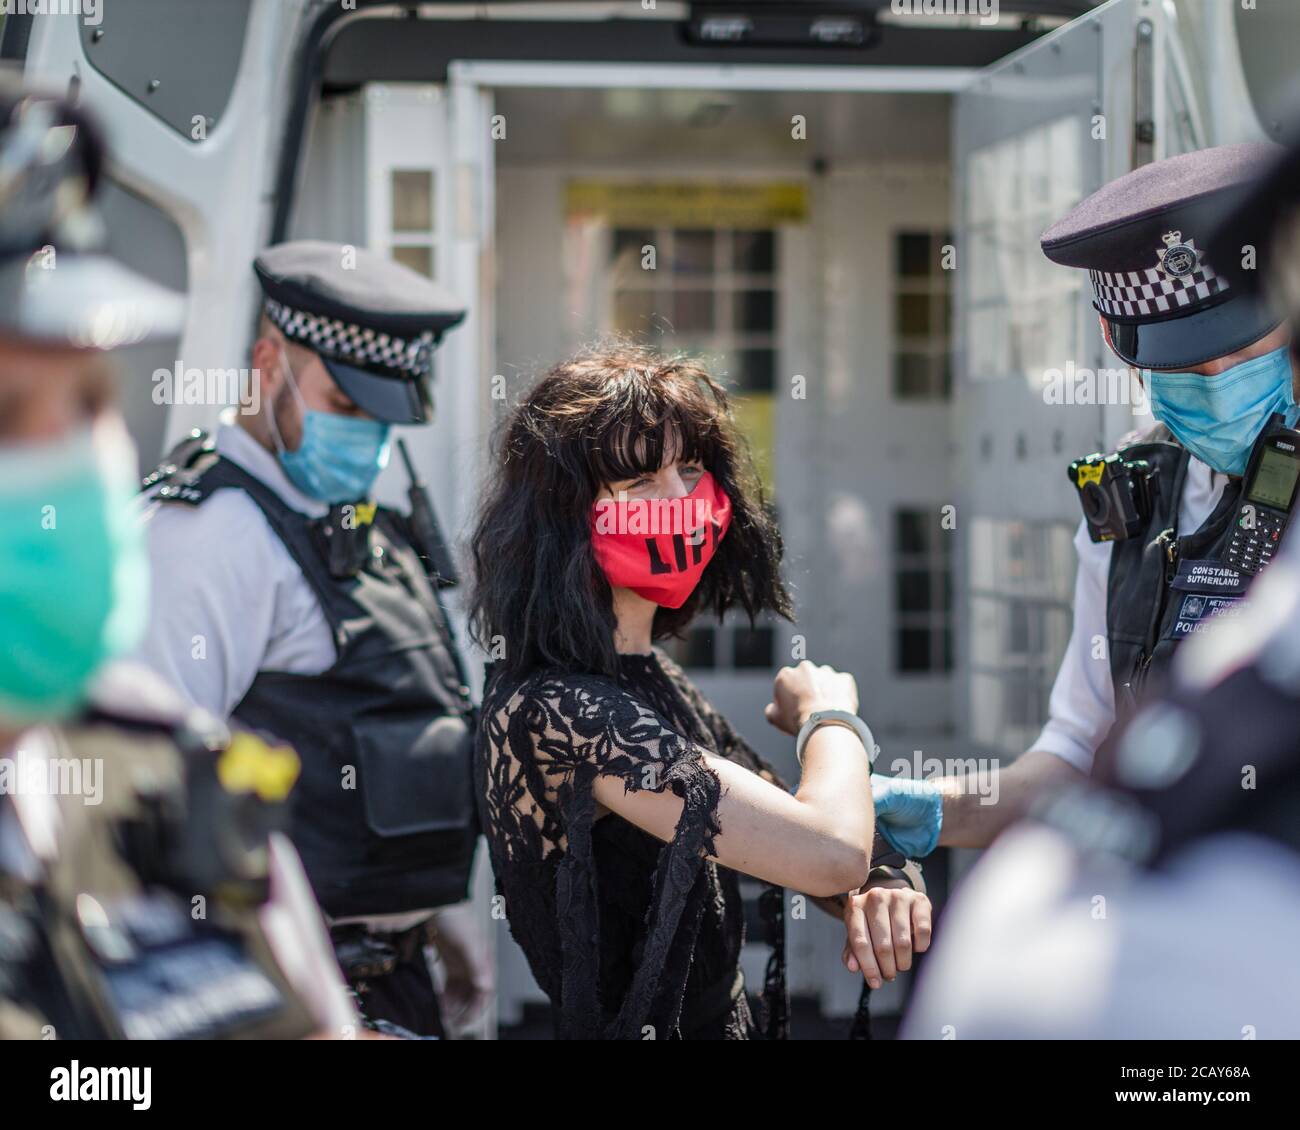 Un manifestant de la rébellion en voie d'extinction est menotté à Trafalgar Square lors d'une manifestation contre la mort des populations autochtones au Brésil. Banque D'Images